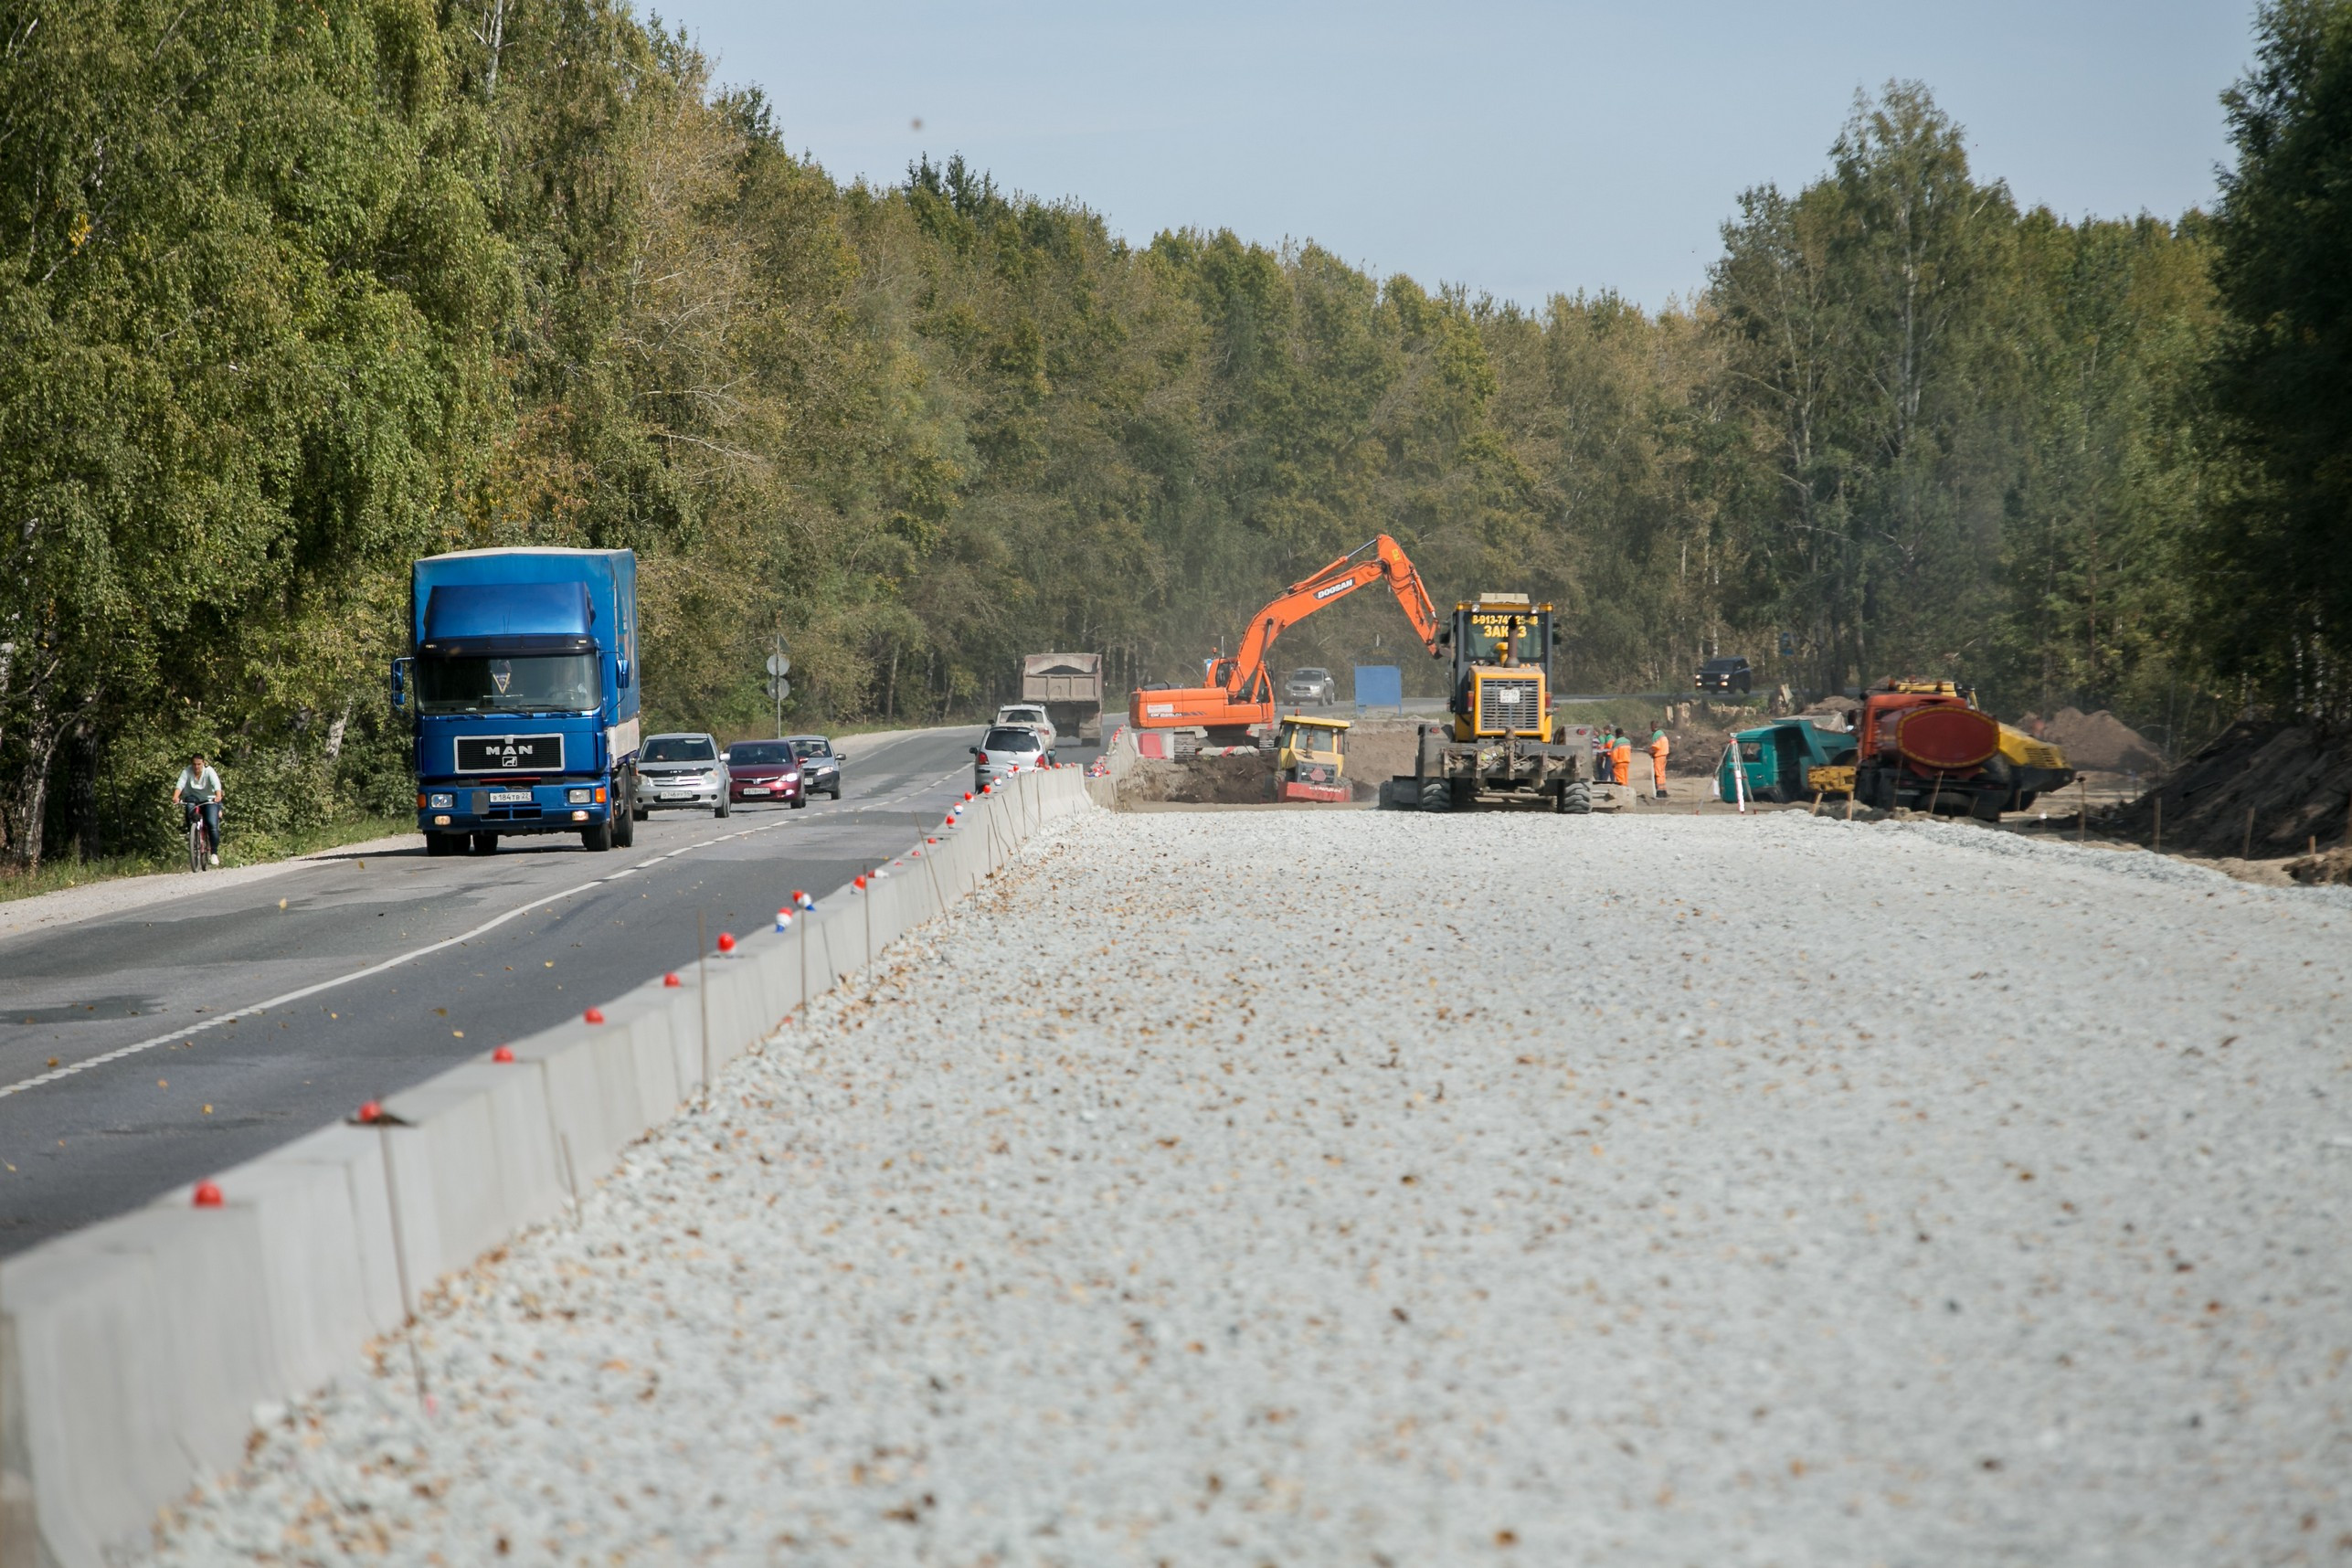 Реконструкция дороги началась во втором полугодии 2017 года